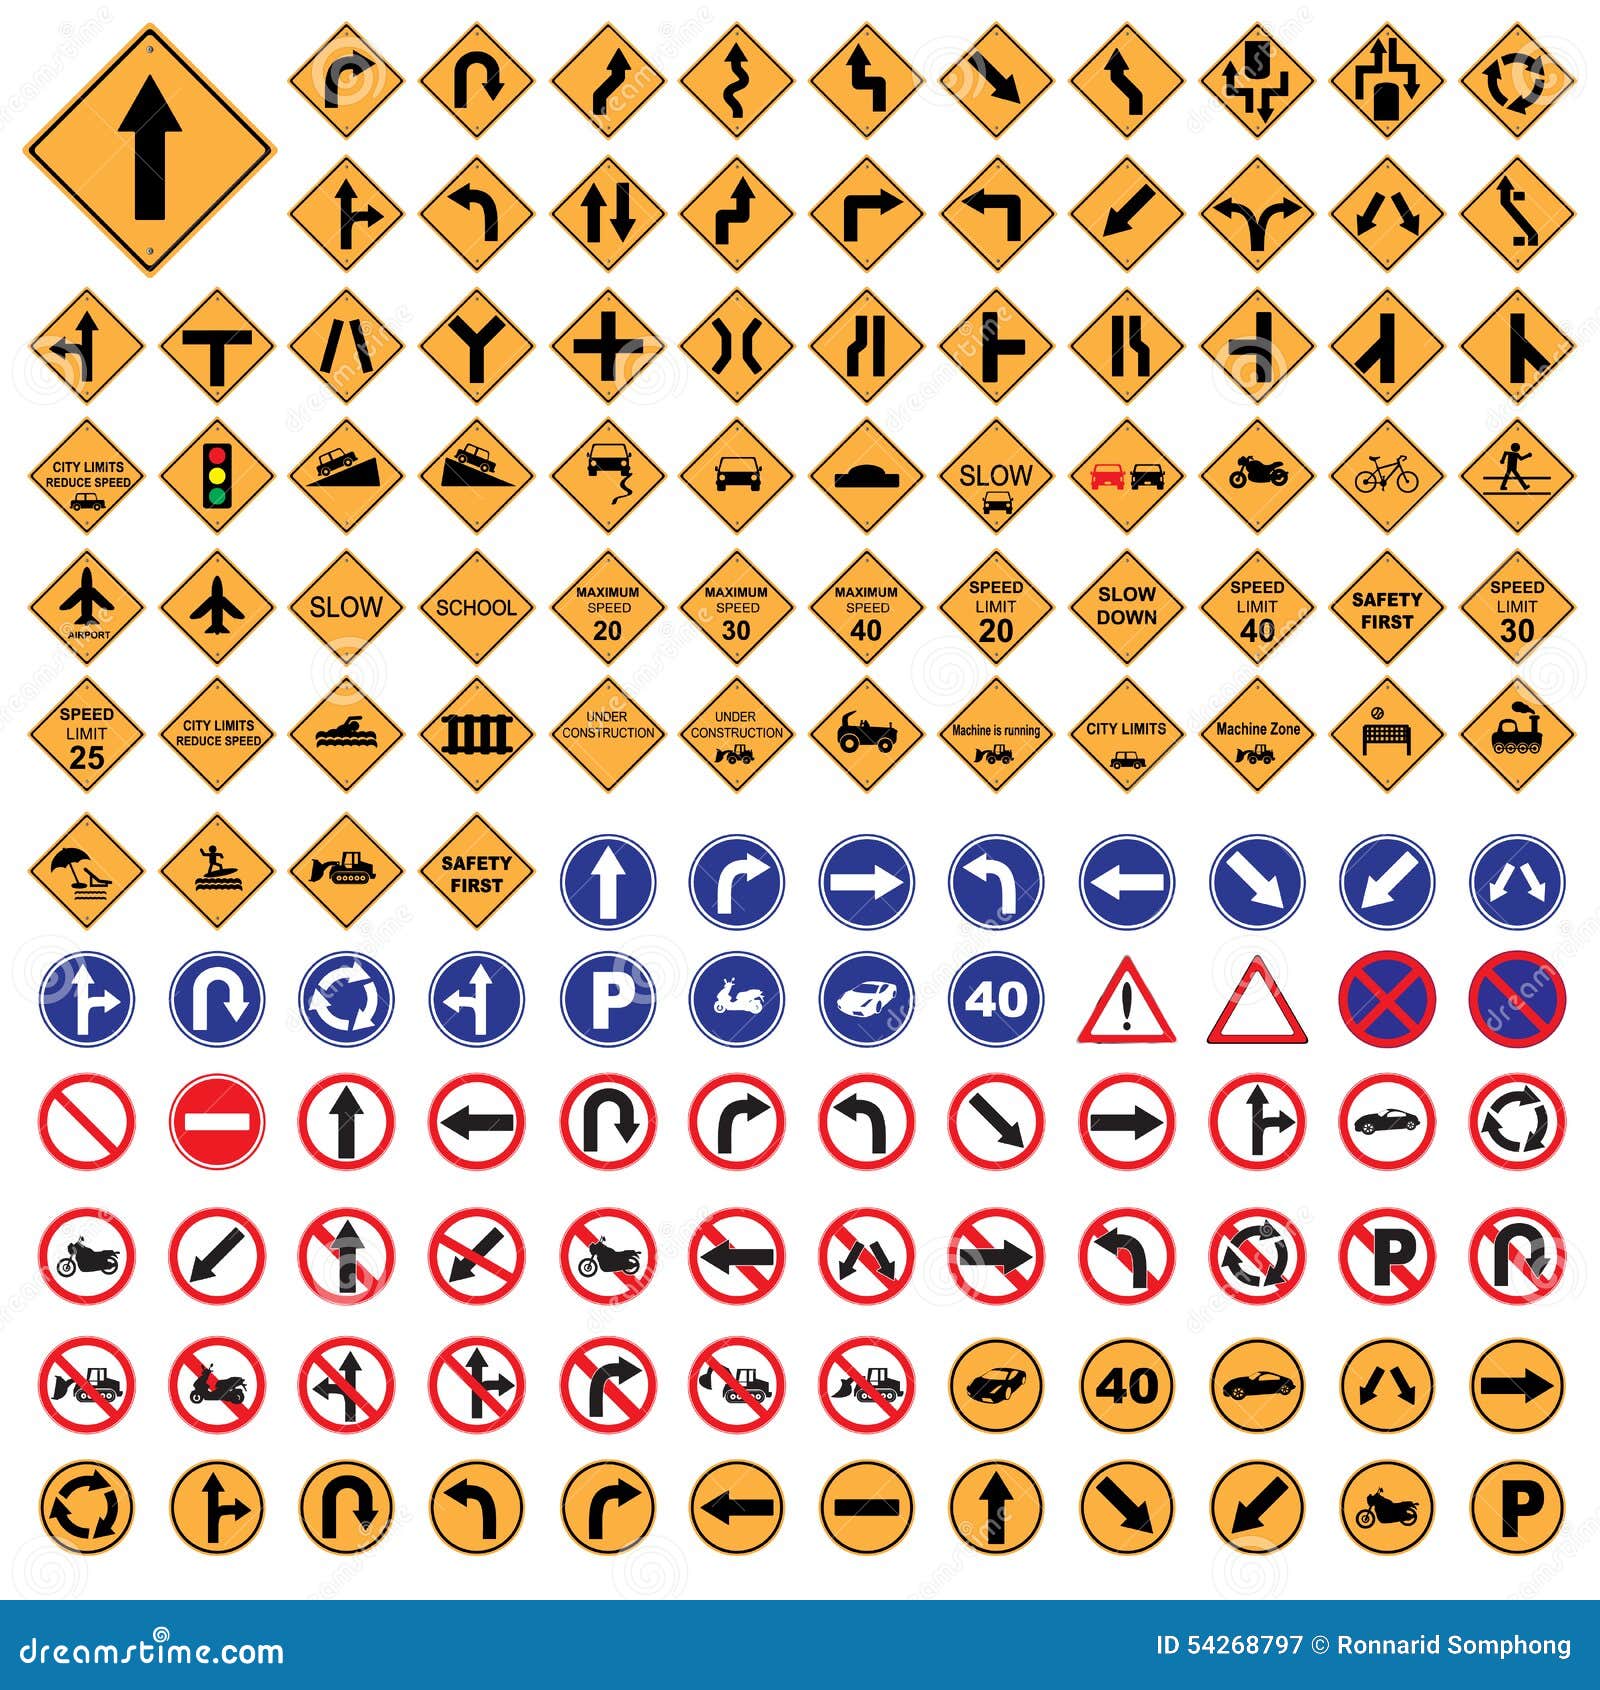 Bộ đèn giao thông đường với biển báo đỏ và xanh da trời sẽ khiến bạn cảm thấy rất ấn tượng. Đó là những công cụ quan trọng và thường xuyên được sử dụng để hướng dẫn các phương tiện tham gia giao thông. Hãy cùng nhau tuân thủ quy tắc để có một cuộc sống an toàn và ý nghĩa hơn nhé!